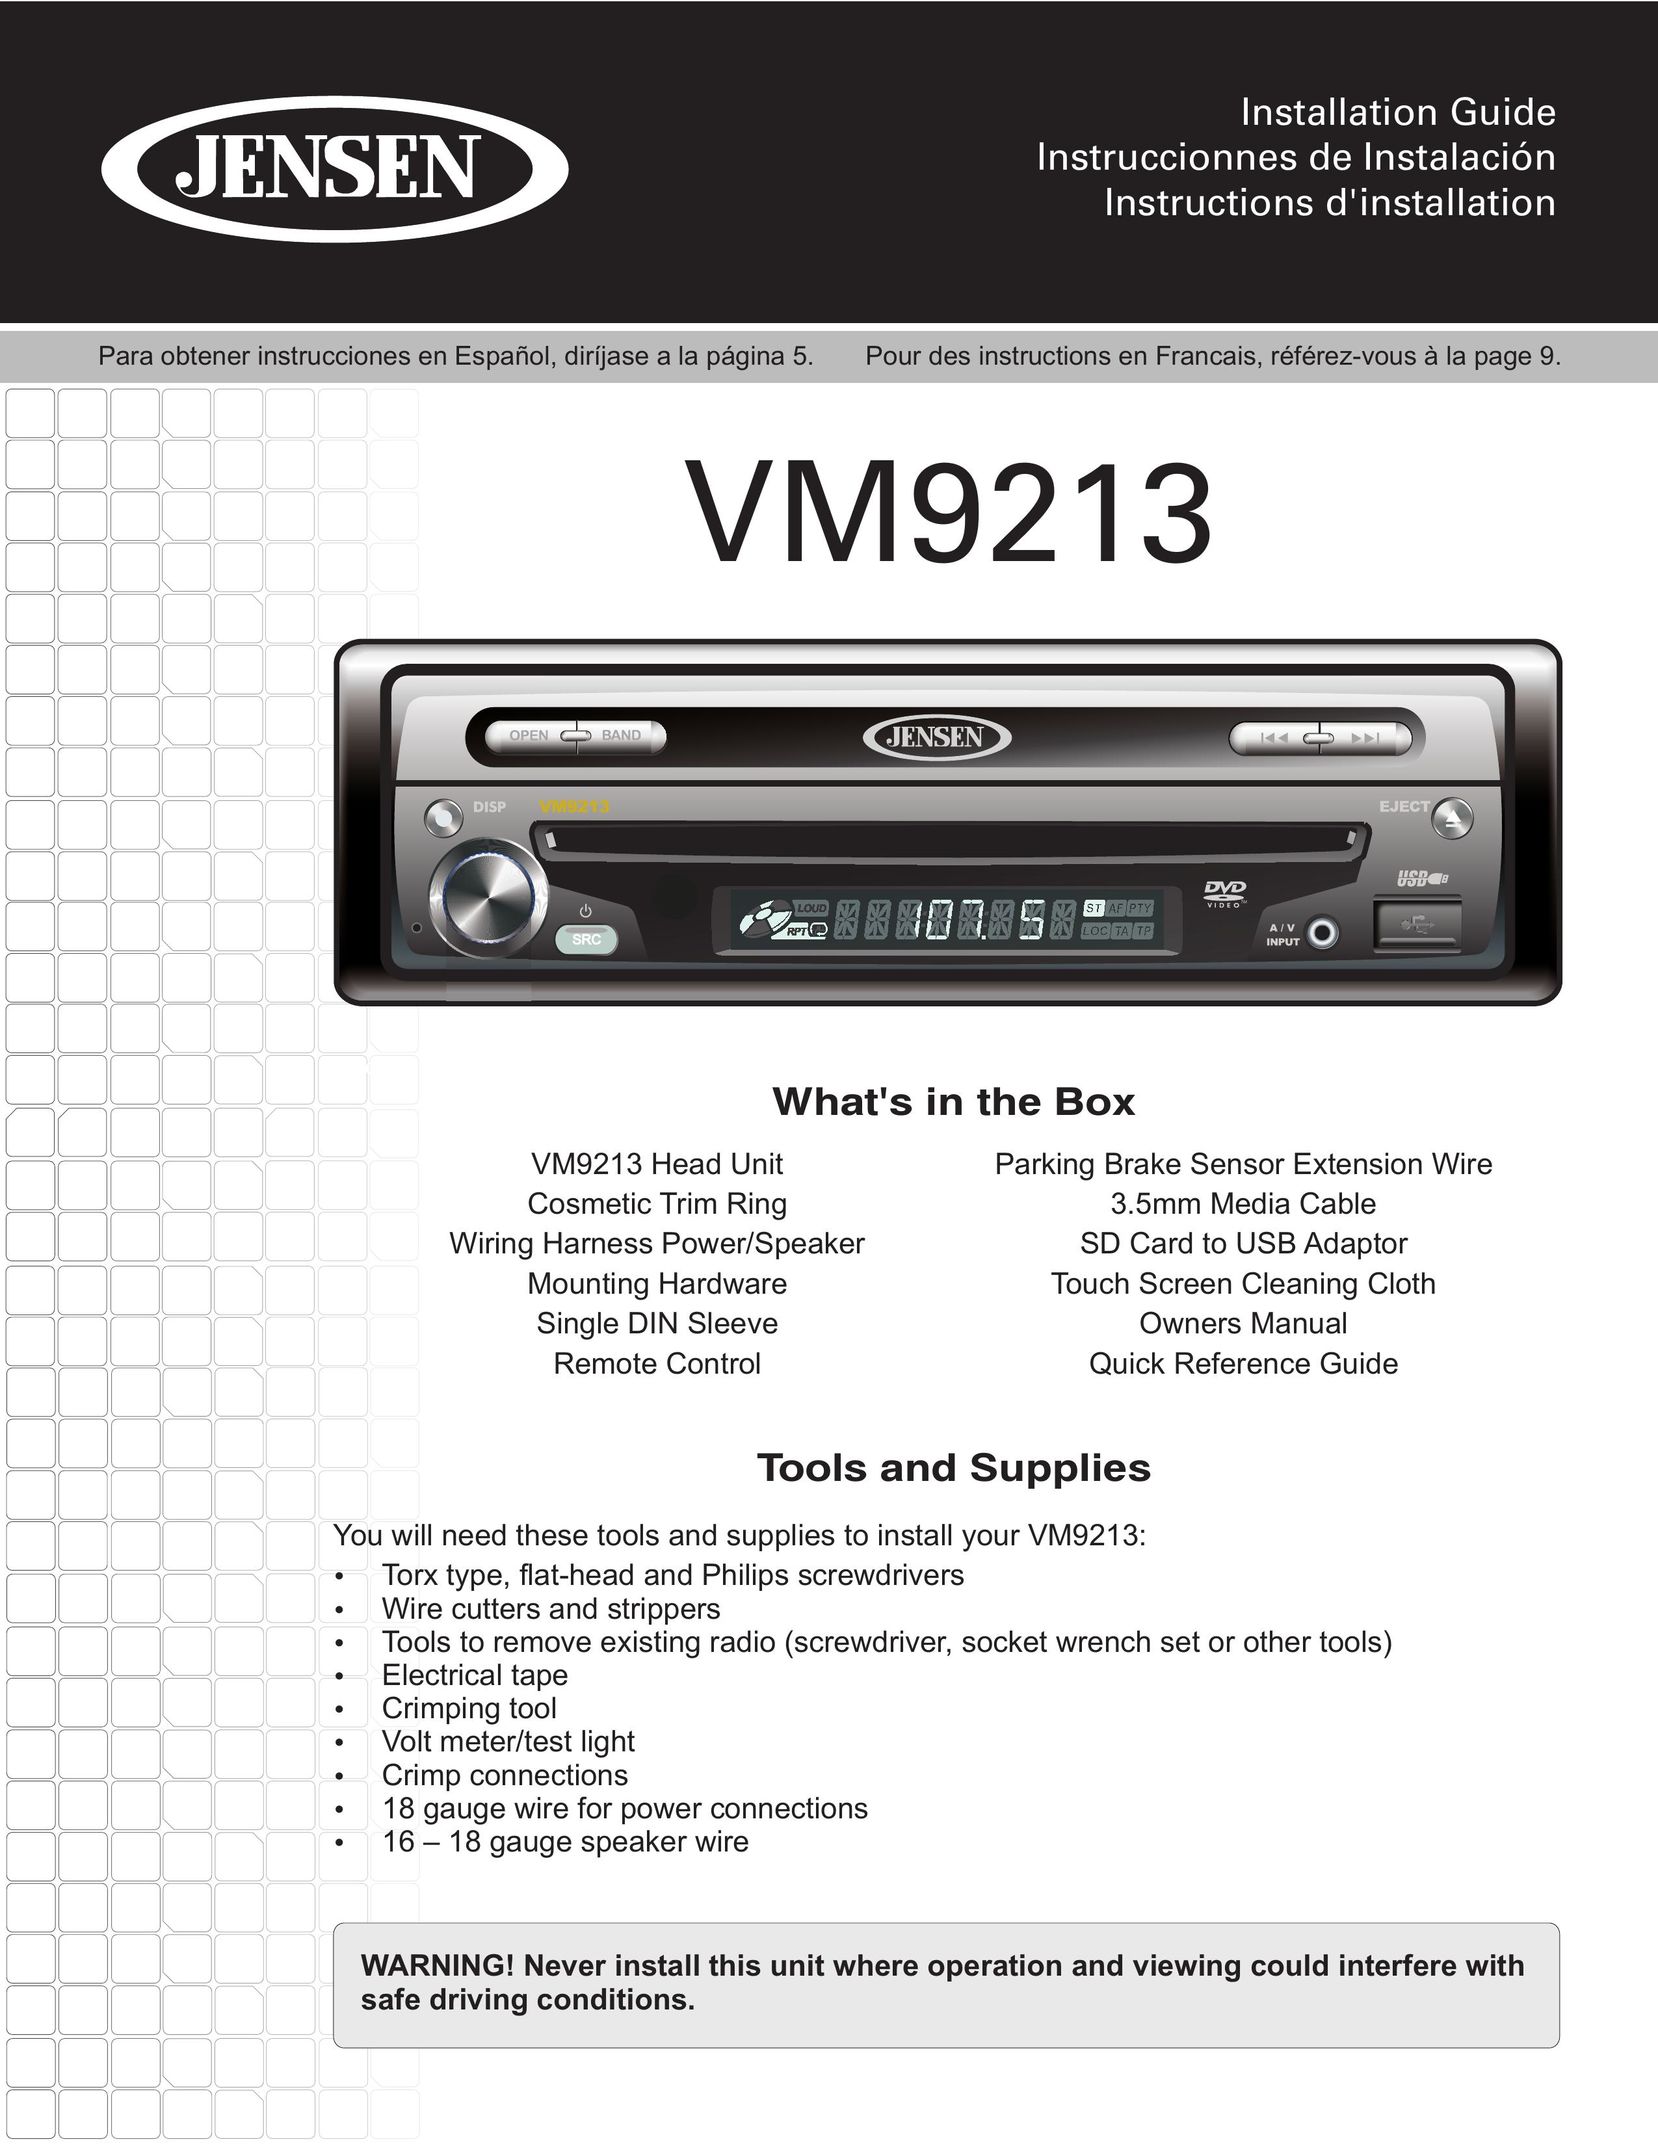 Jensen VM9213 Car Video System User Manual